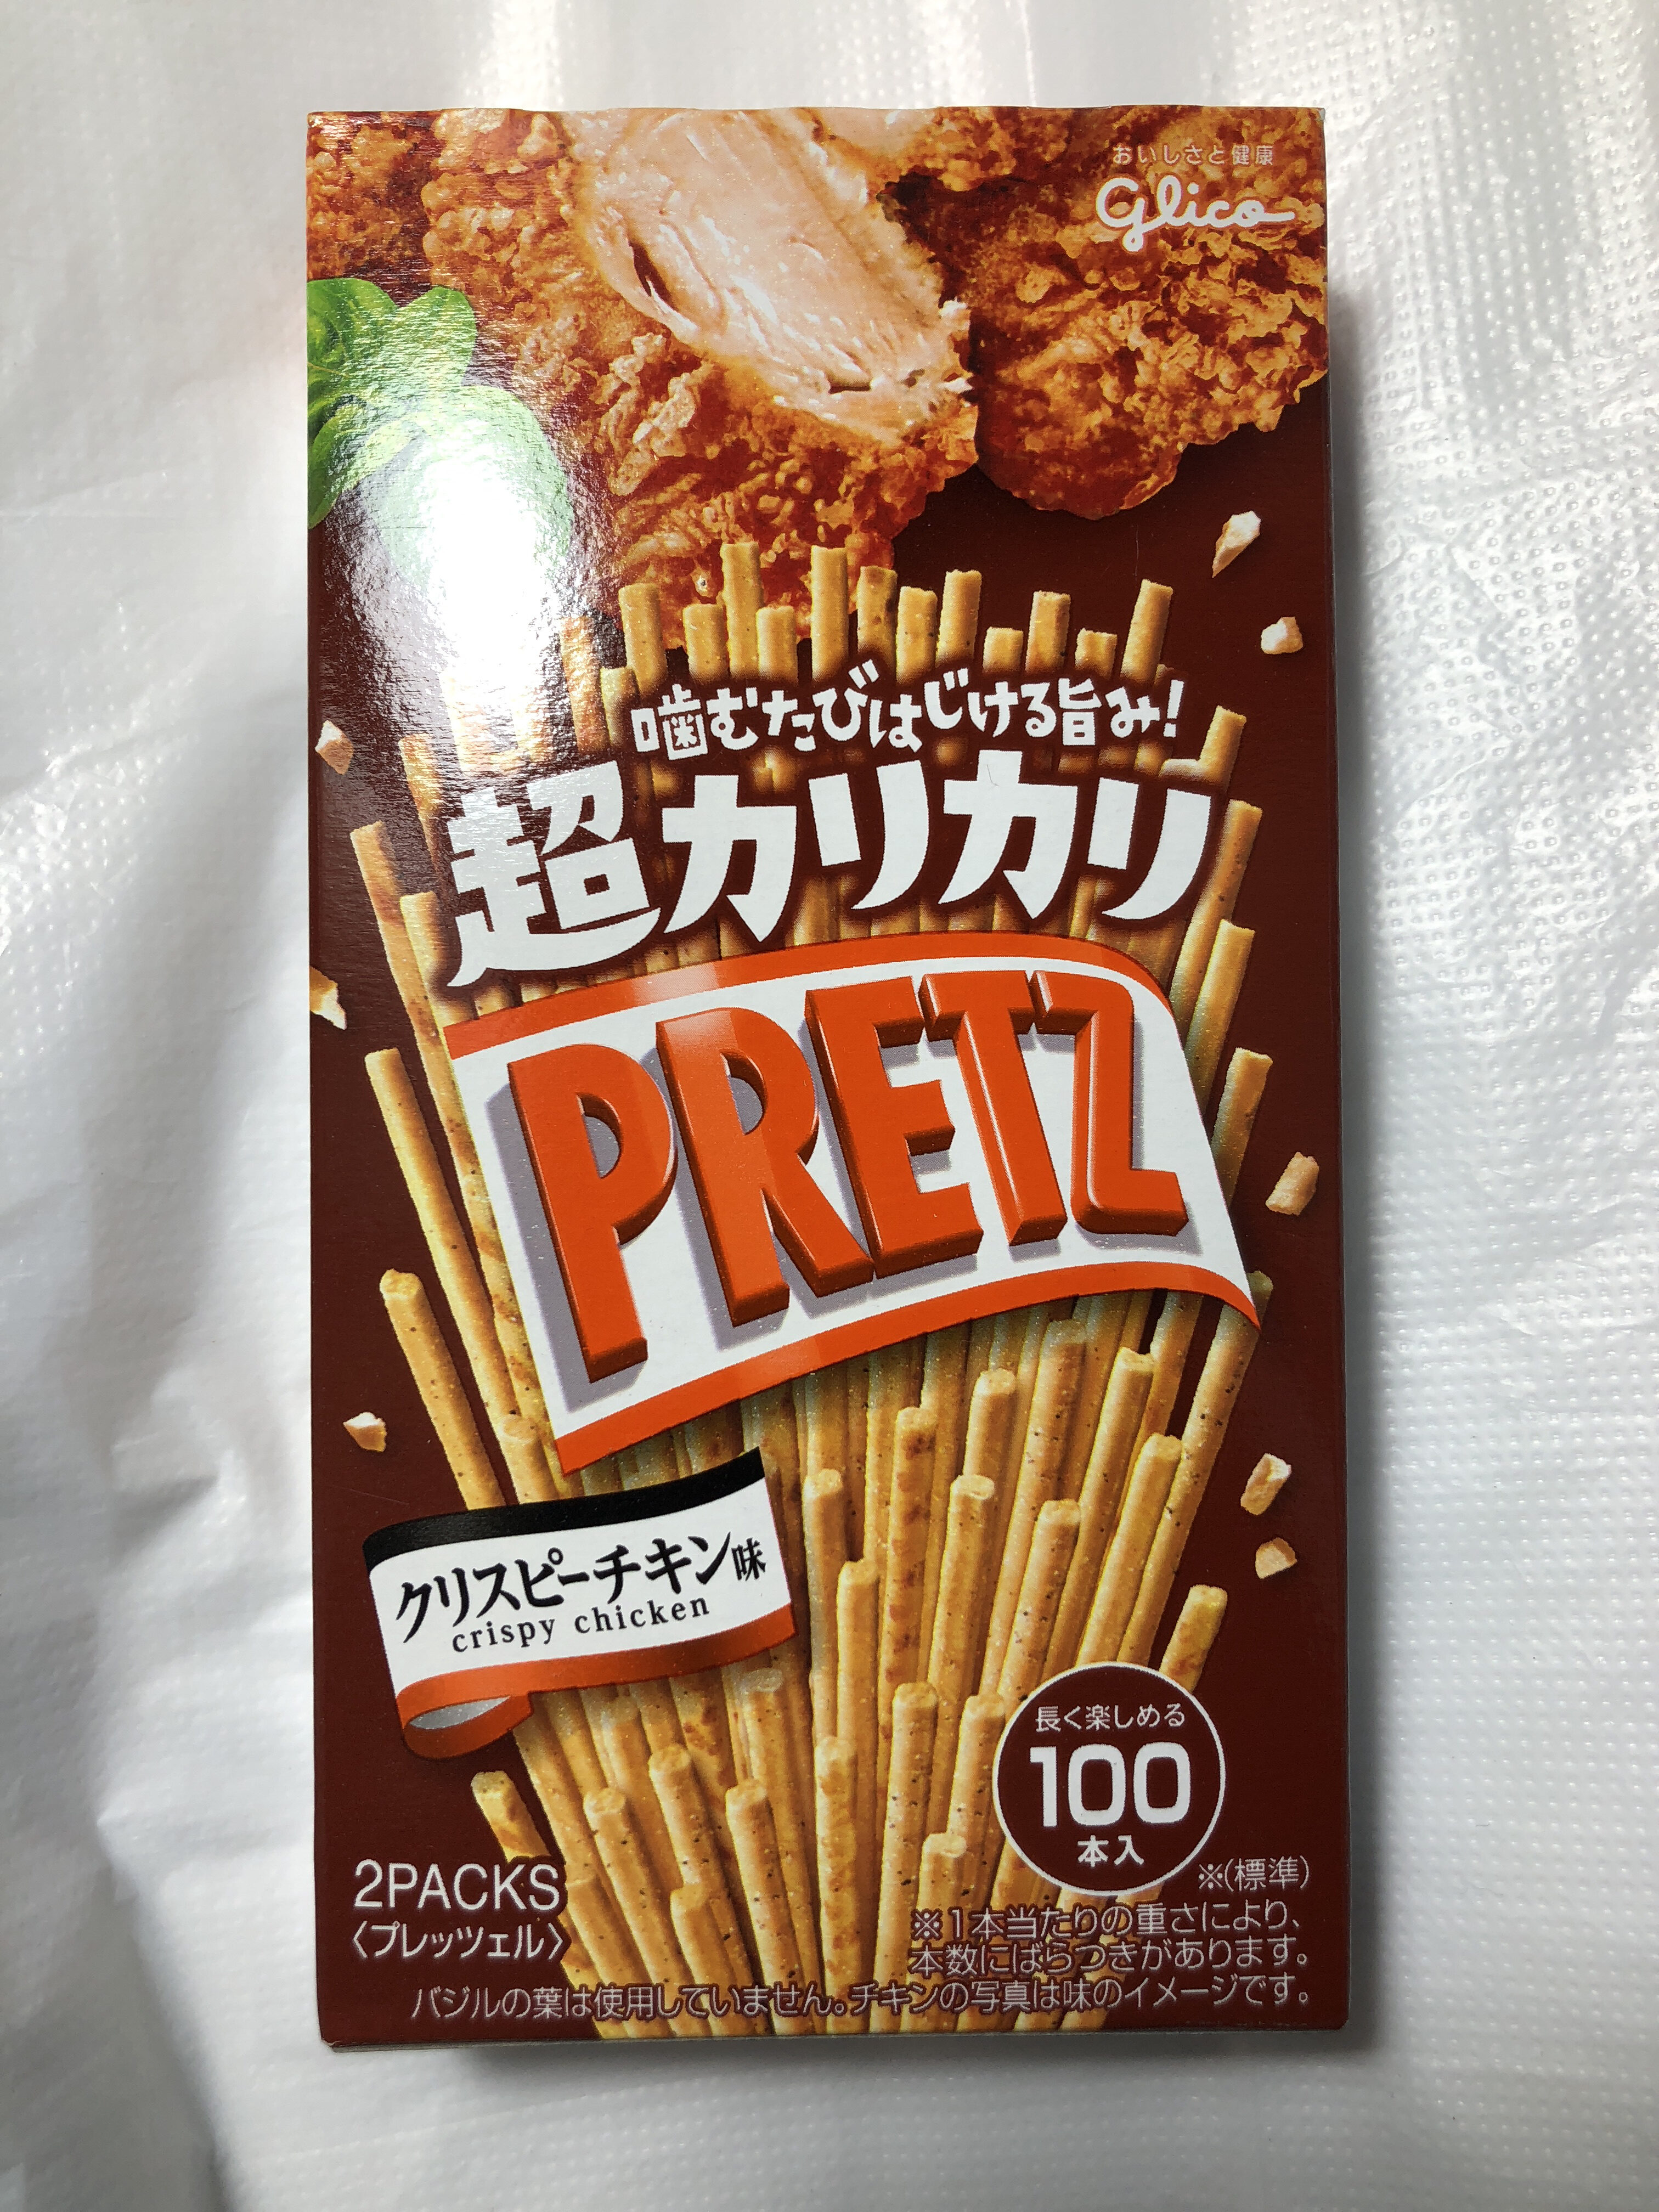 Pretz Super Chunchy Cripsy Chicken Biscuit Stick - Product - en